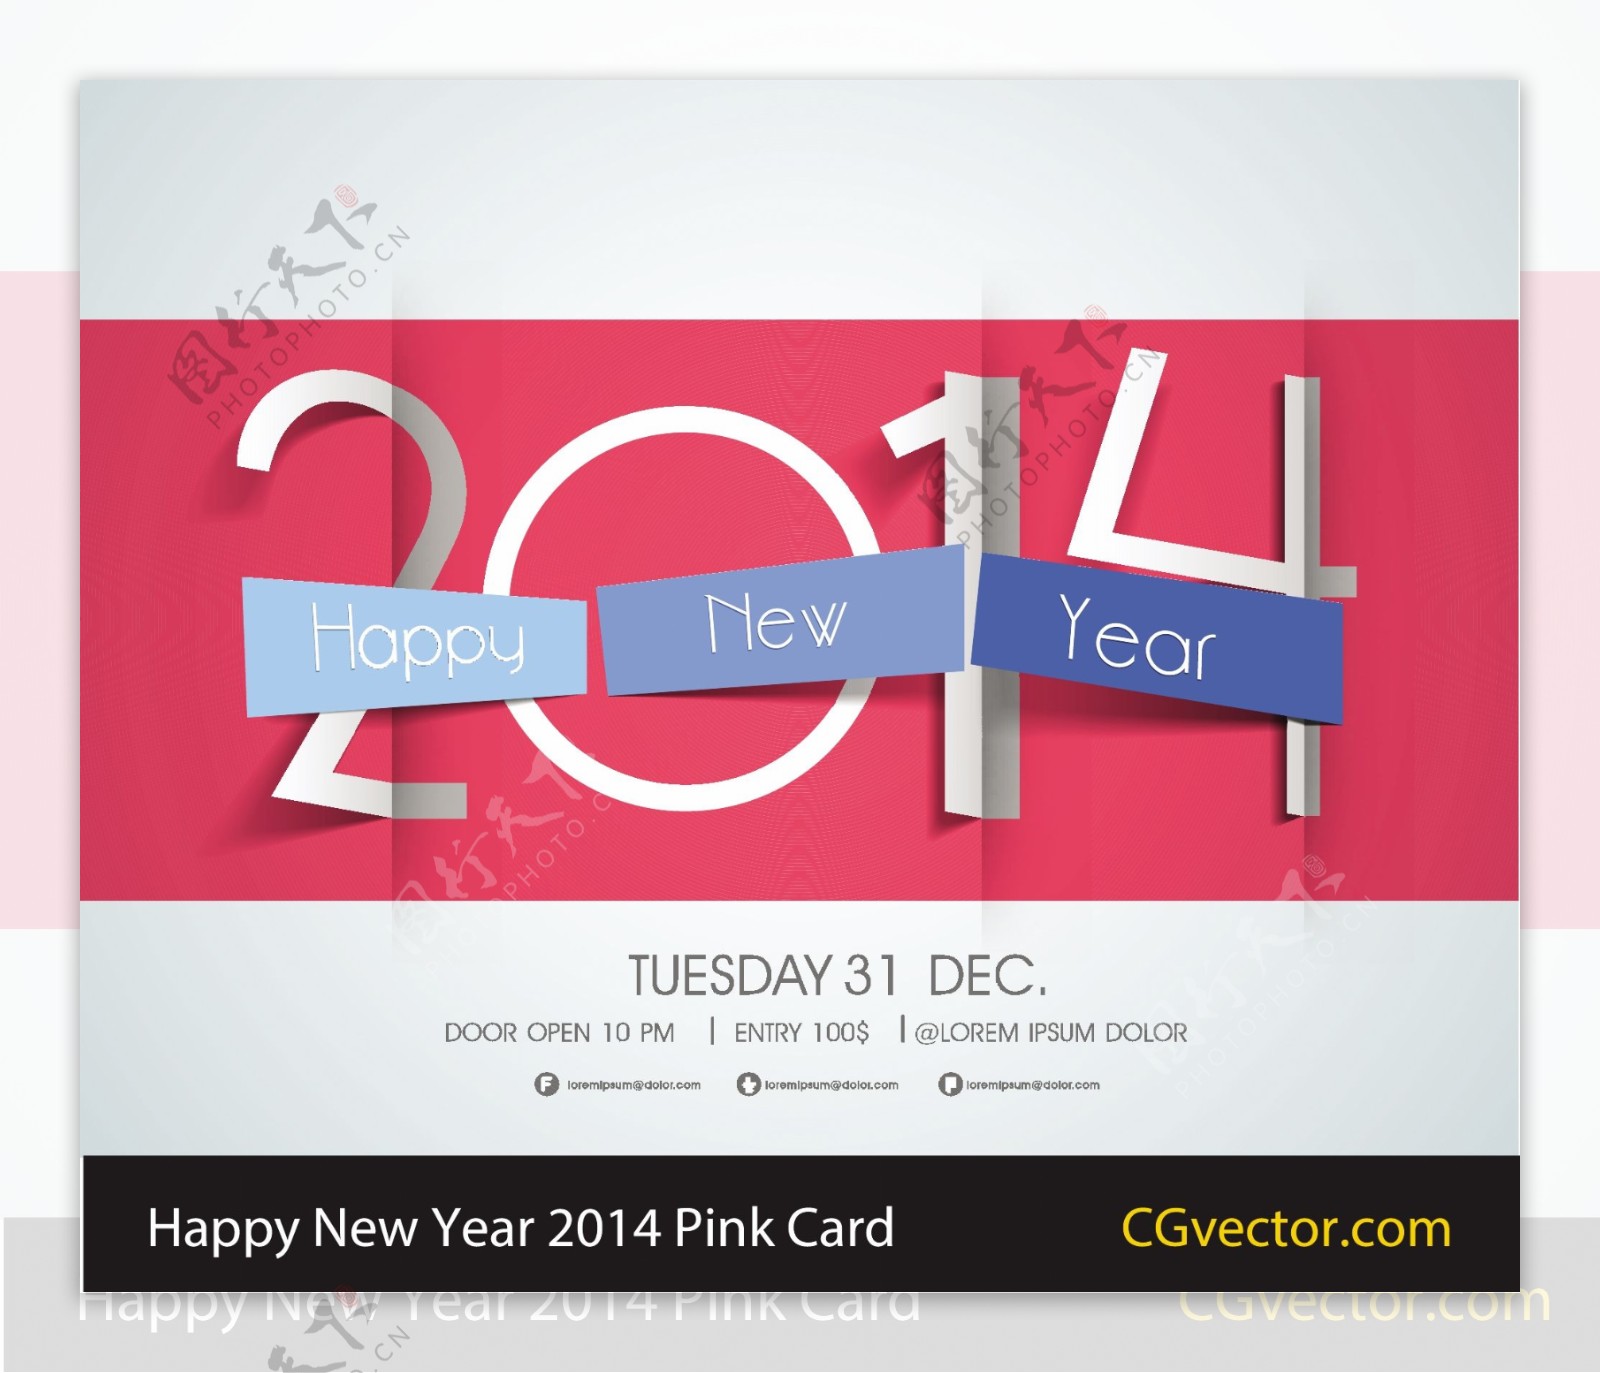 新年快乐2014粉红卡